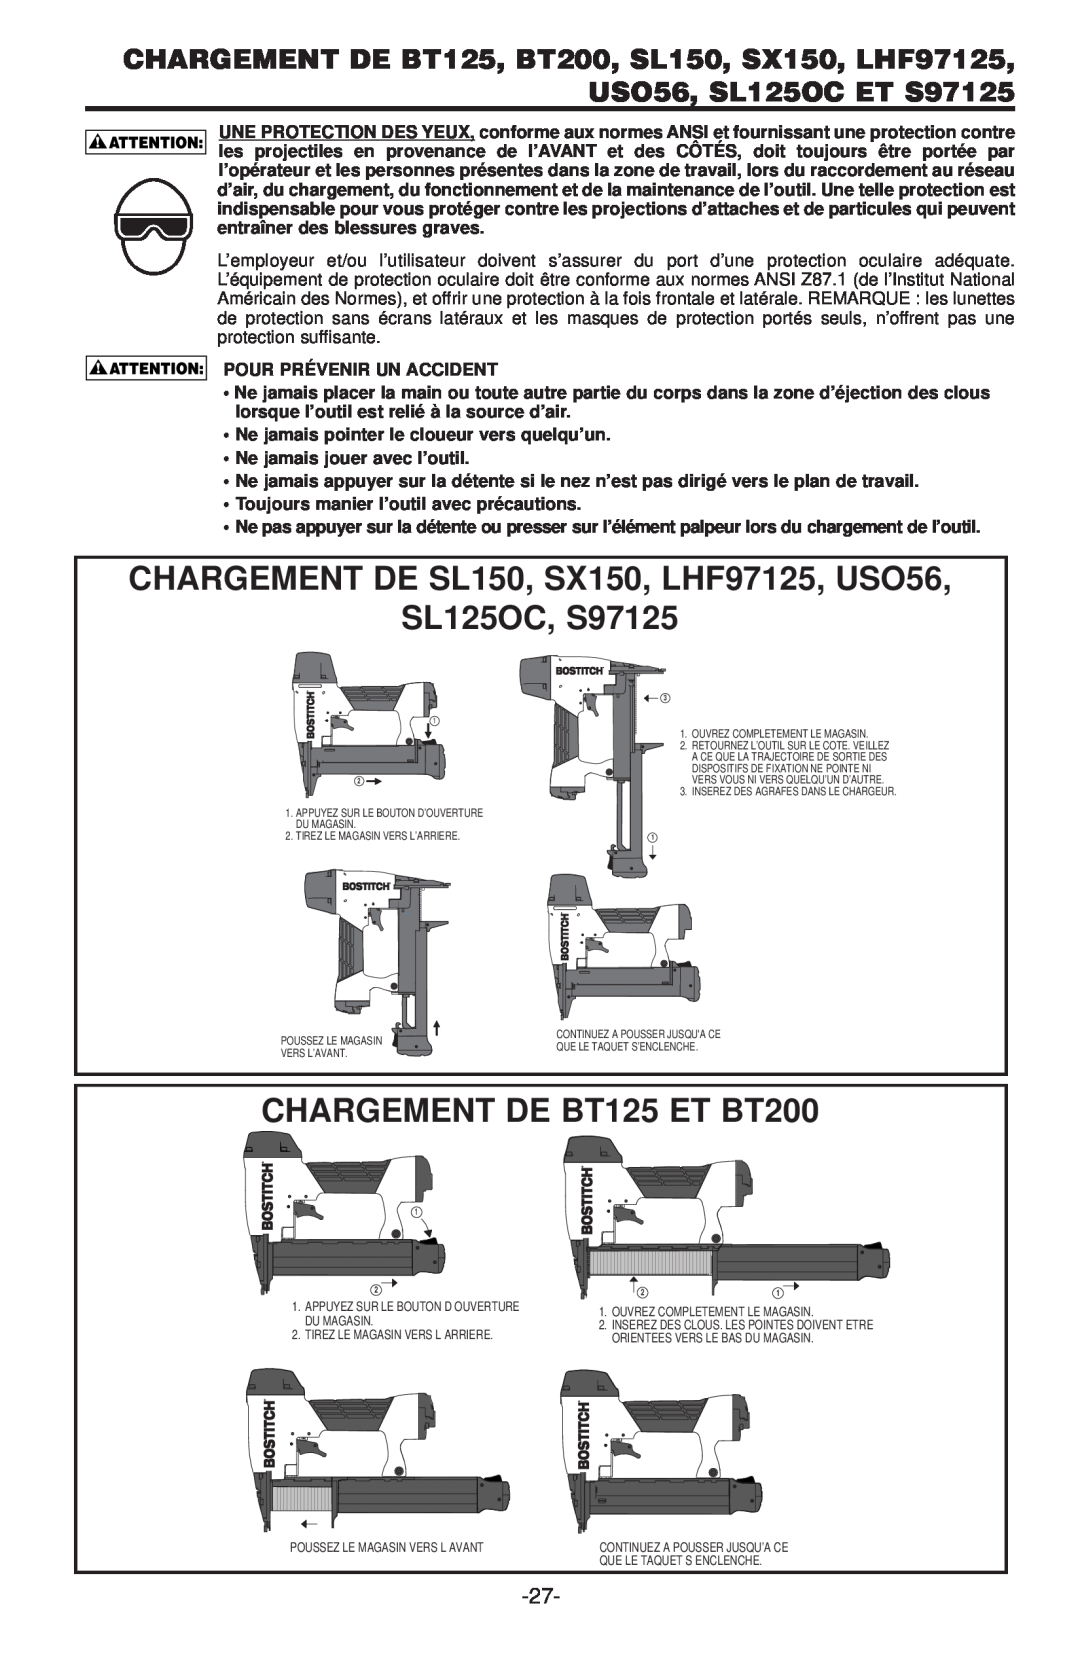 Inova SX150-BHF manual CHARGEMENT DE SL150, SX150, LHF97125, USO56 SL125OC, S97125, CHARGEMENT DE BT125 ET BT200 